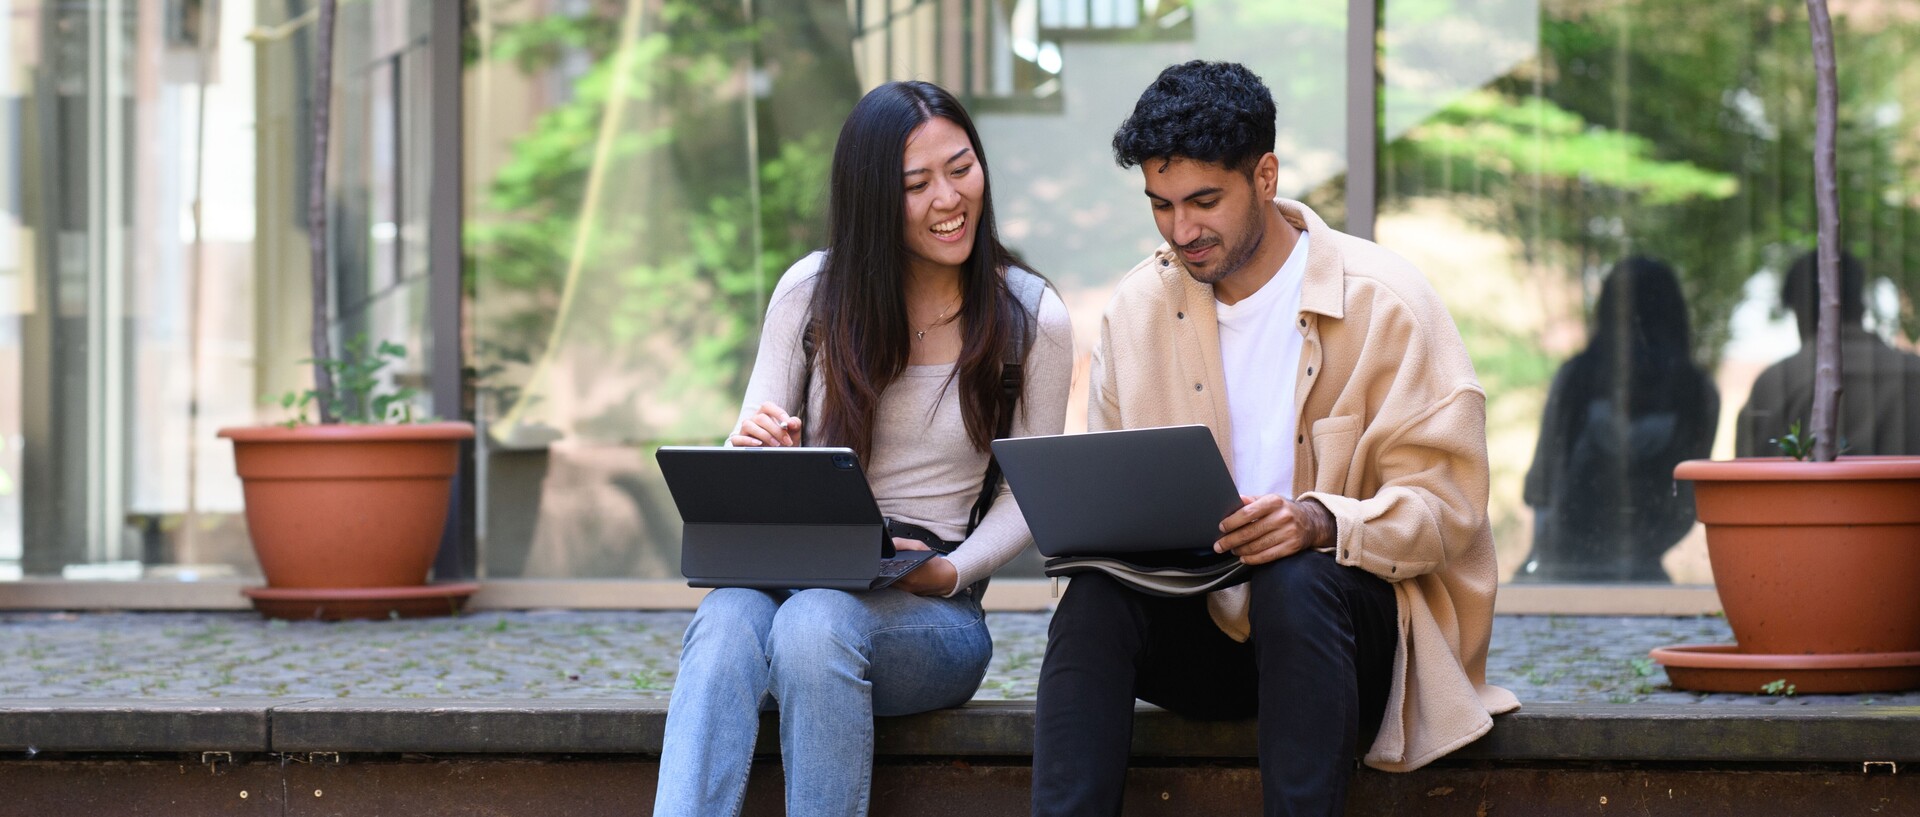 Eine Studentin und ein Student sitzen lachend auf einer Treppe und arbeiten an ihren Laptops.